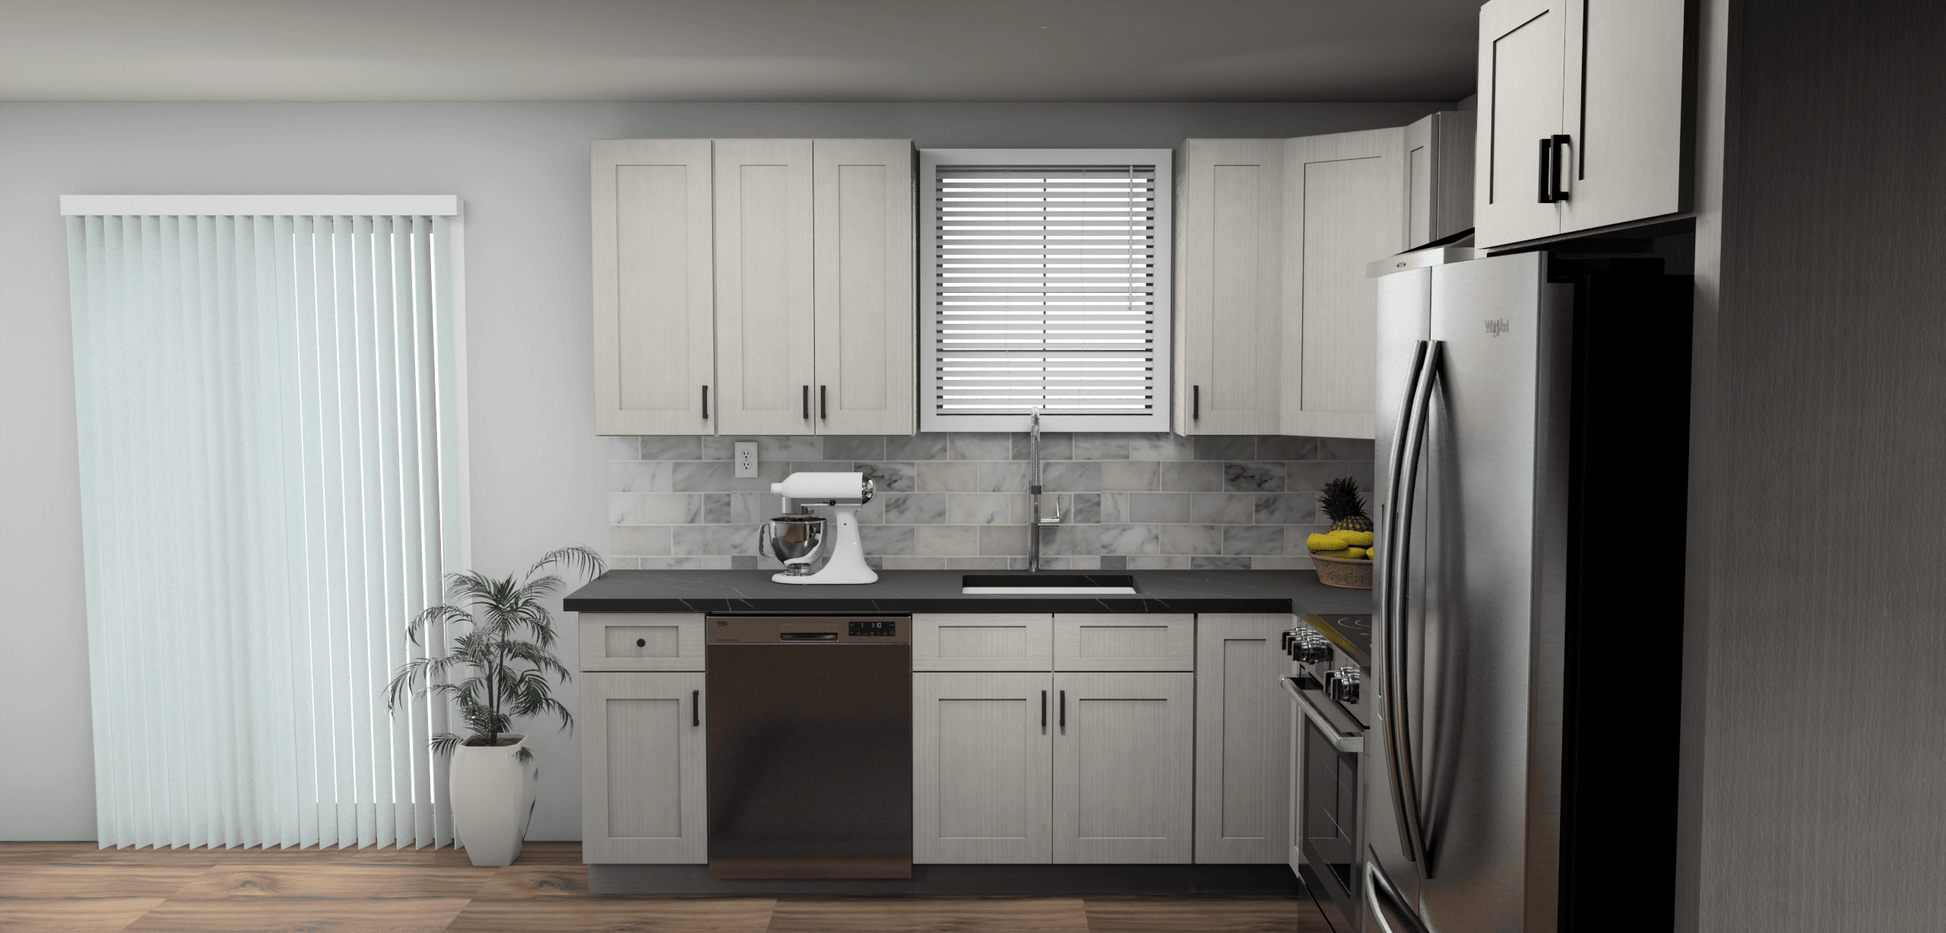 Fabuwood Allure Galaxy Horizon 9 x 11 L Shaped Kitchen Side Layout Photo